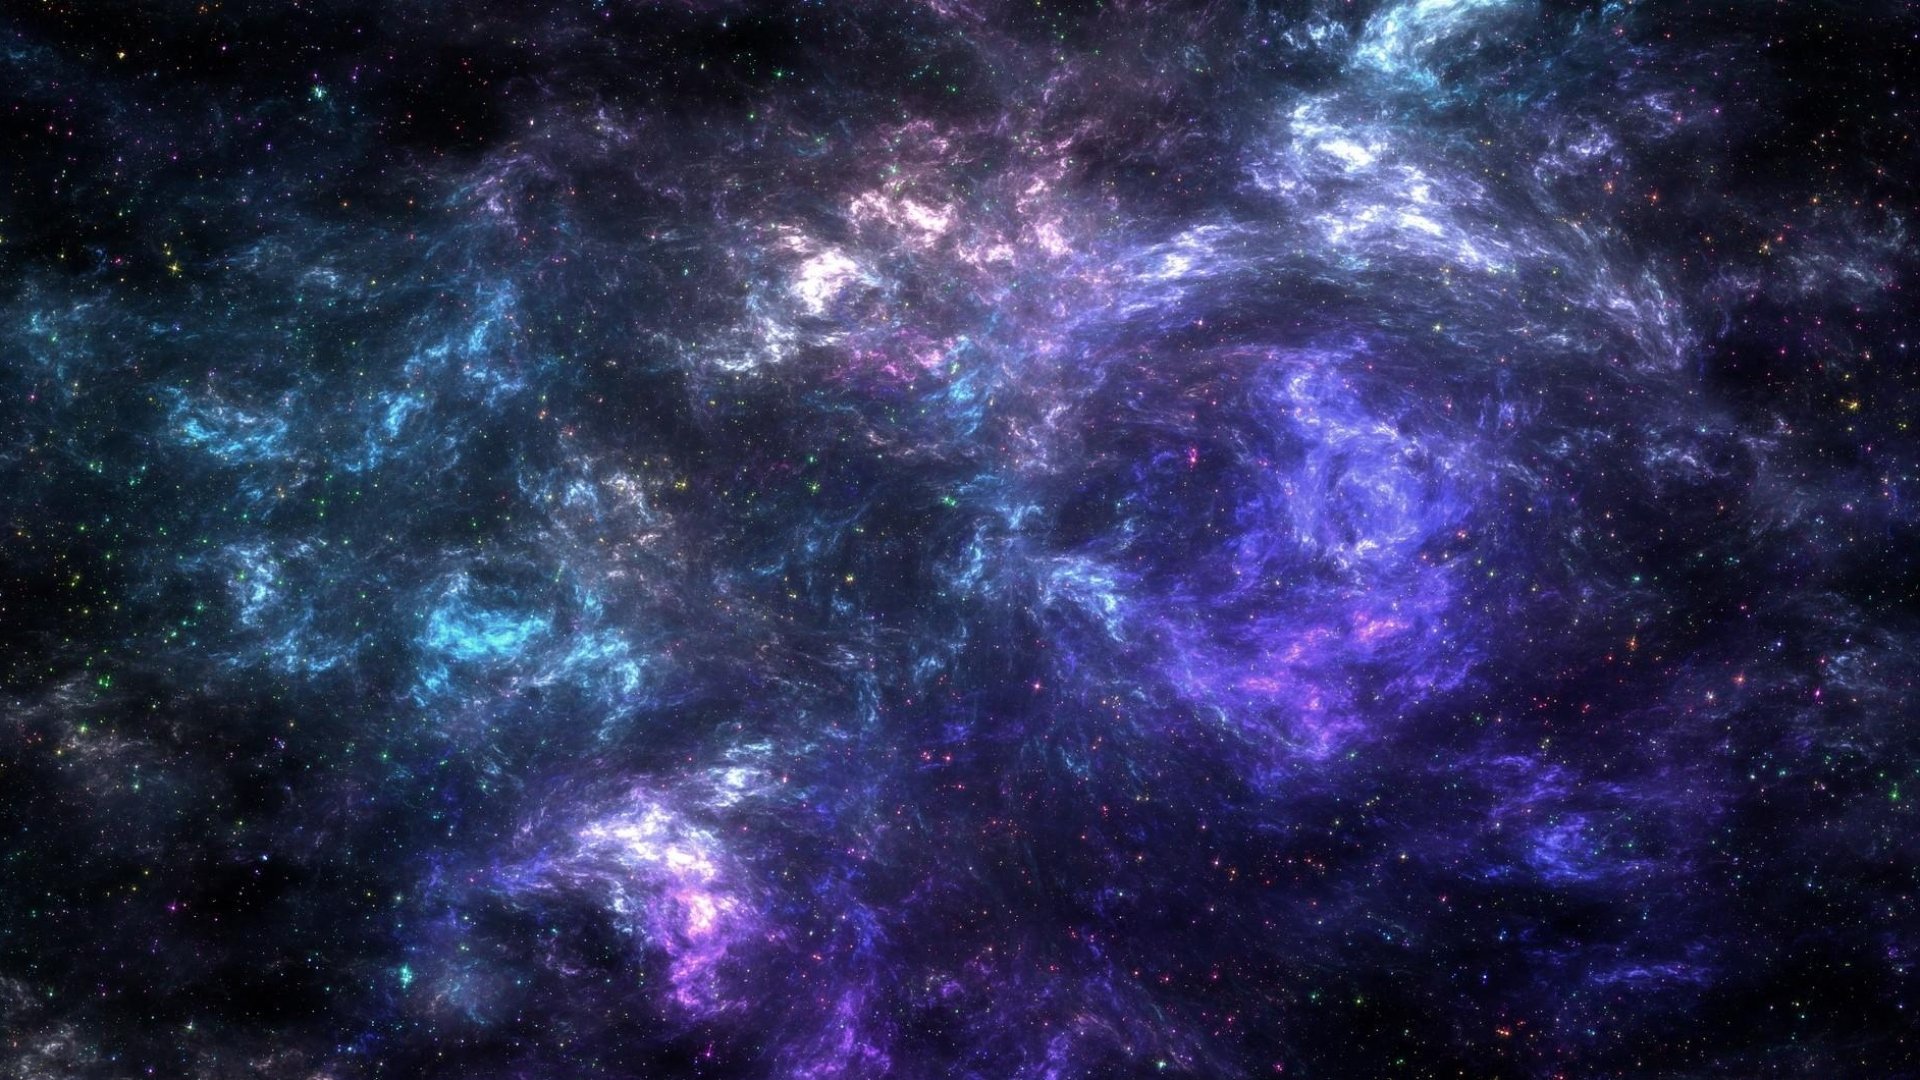 Khám phá những bức hình nền Galaxy 4K nét căng sắc và sống động. Ngắm cận cảnh những hành tinh, sao, mây khói và các hiện tượng thiên nhiên độc đáo, tất cả đều được phóng tầm gần đến mức bạn có thể cảm nhận được sự bùng nổ màu sắc.